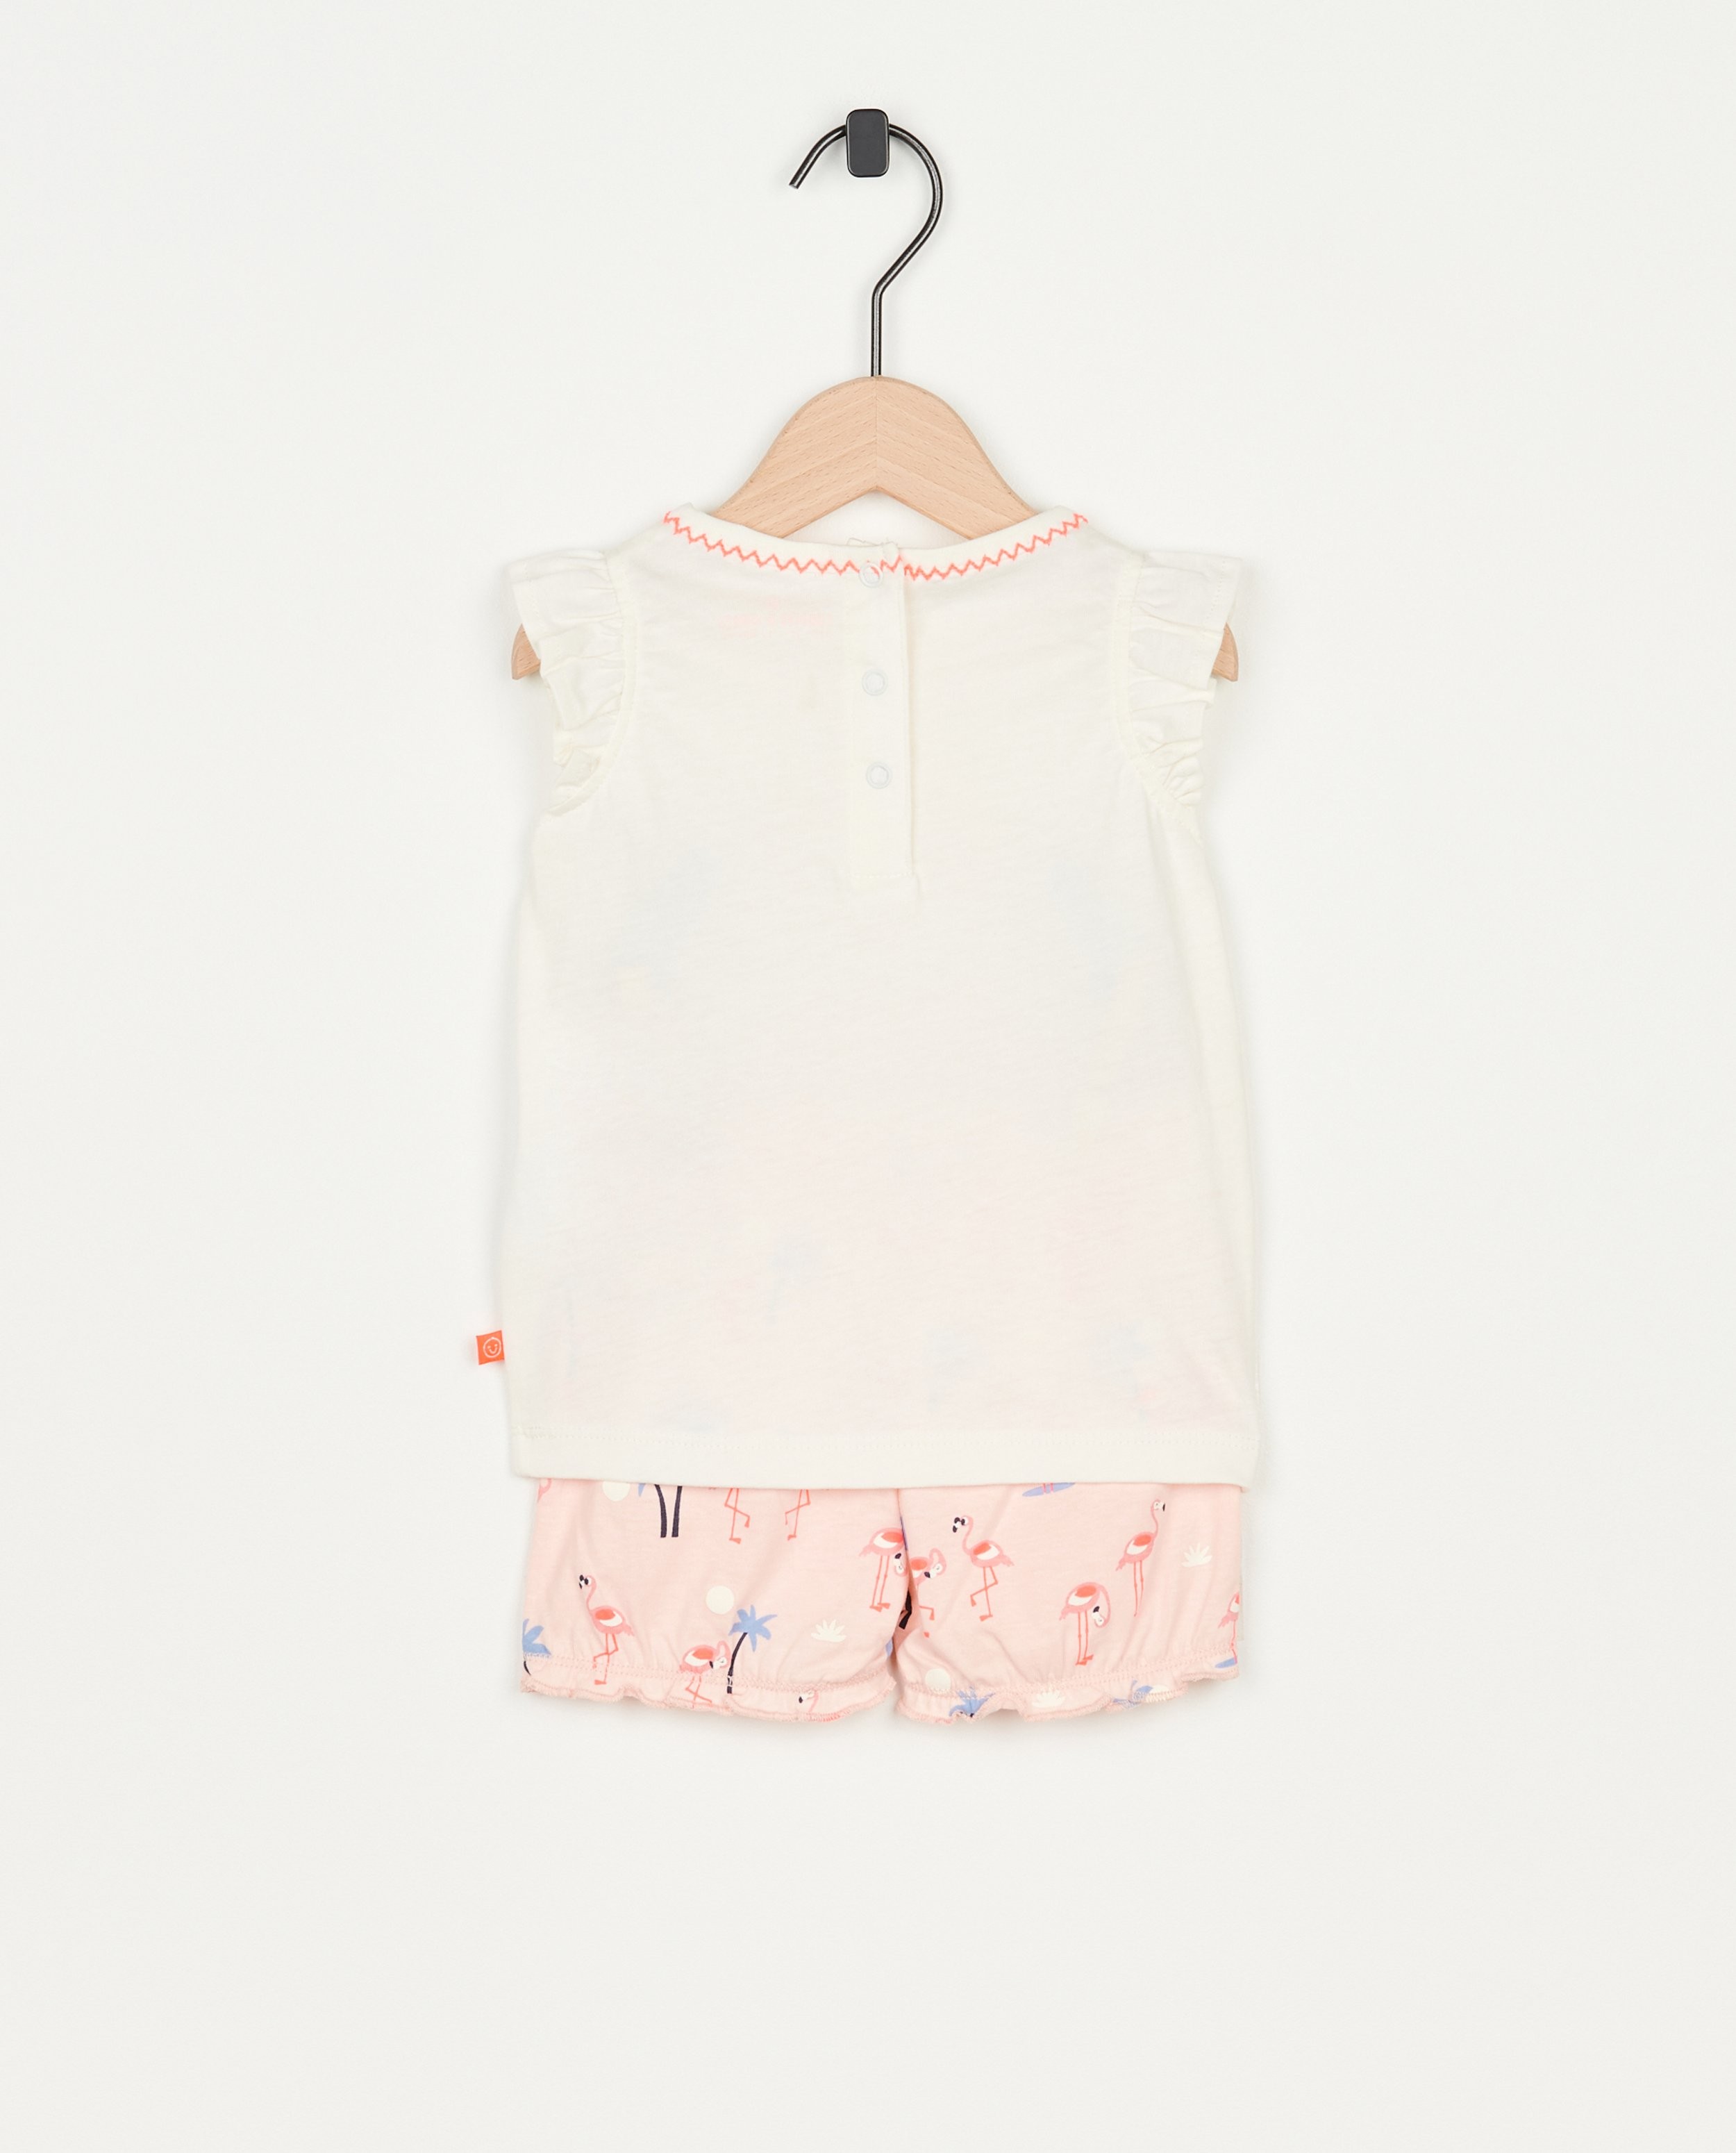 Nachtkleding - Pyjama met flamingoprint